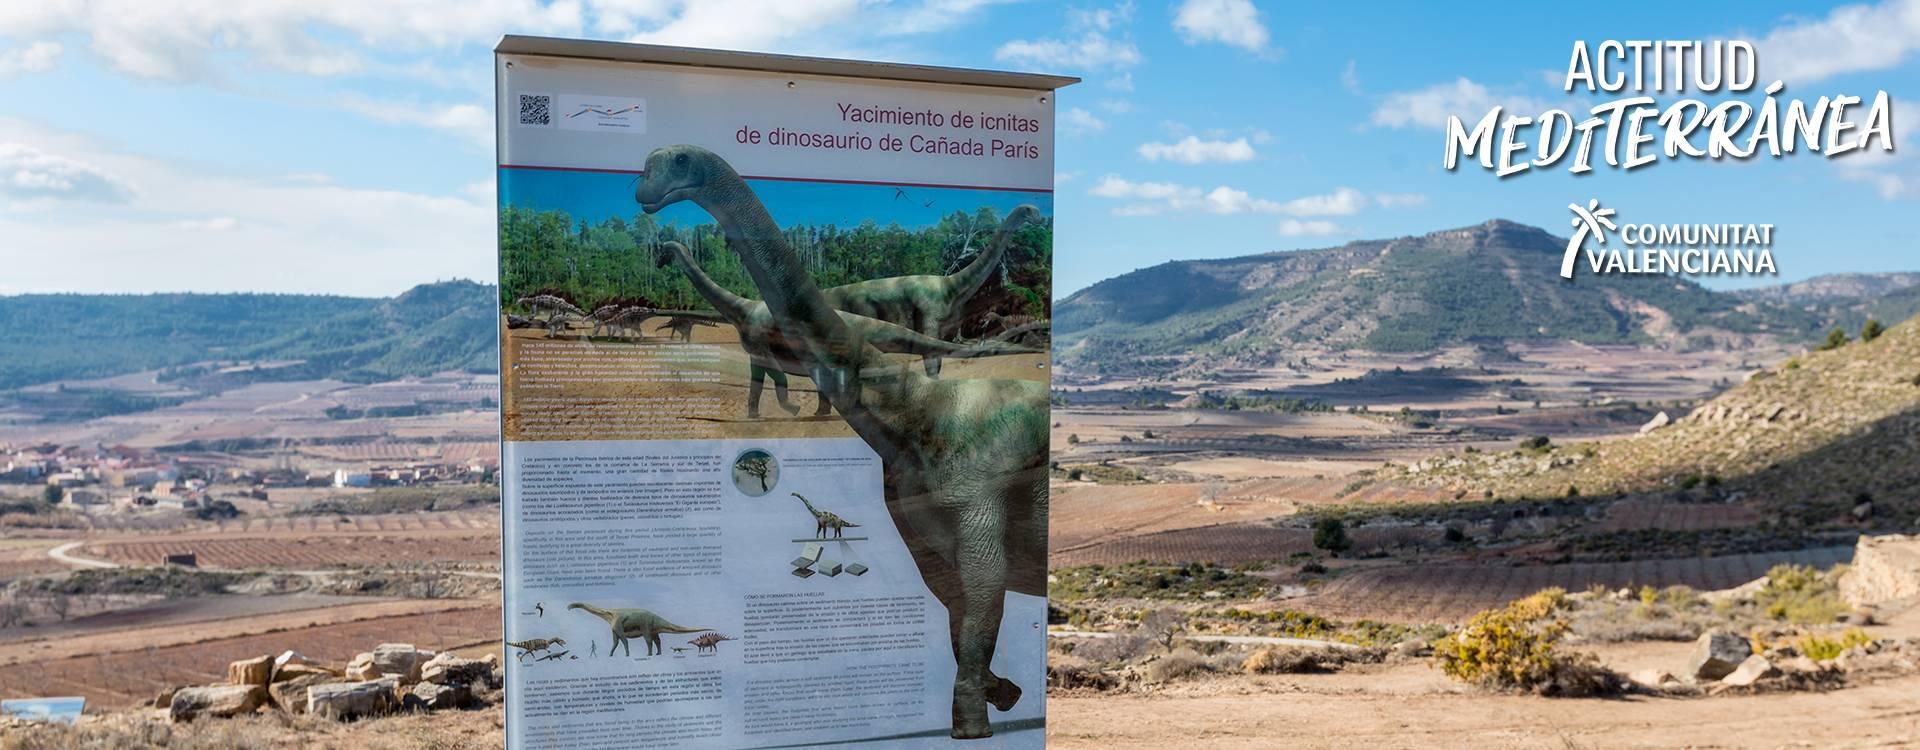 Dinosaur footprint site at Corcolilla